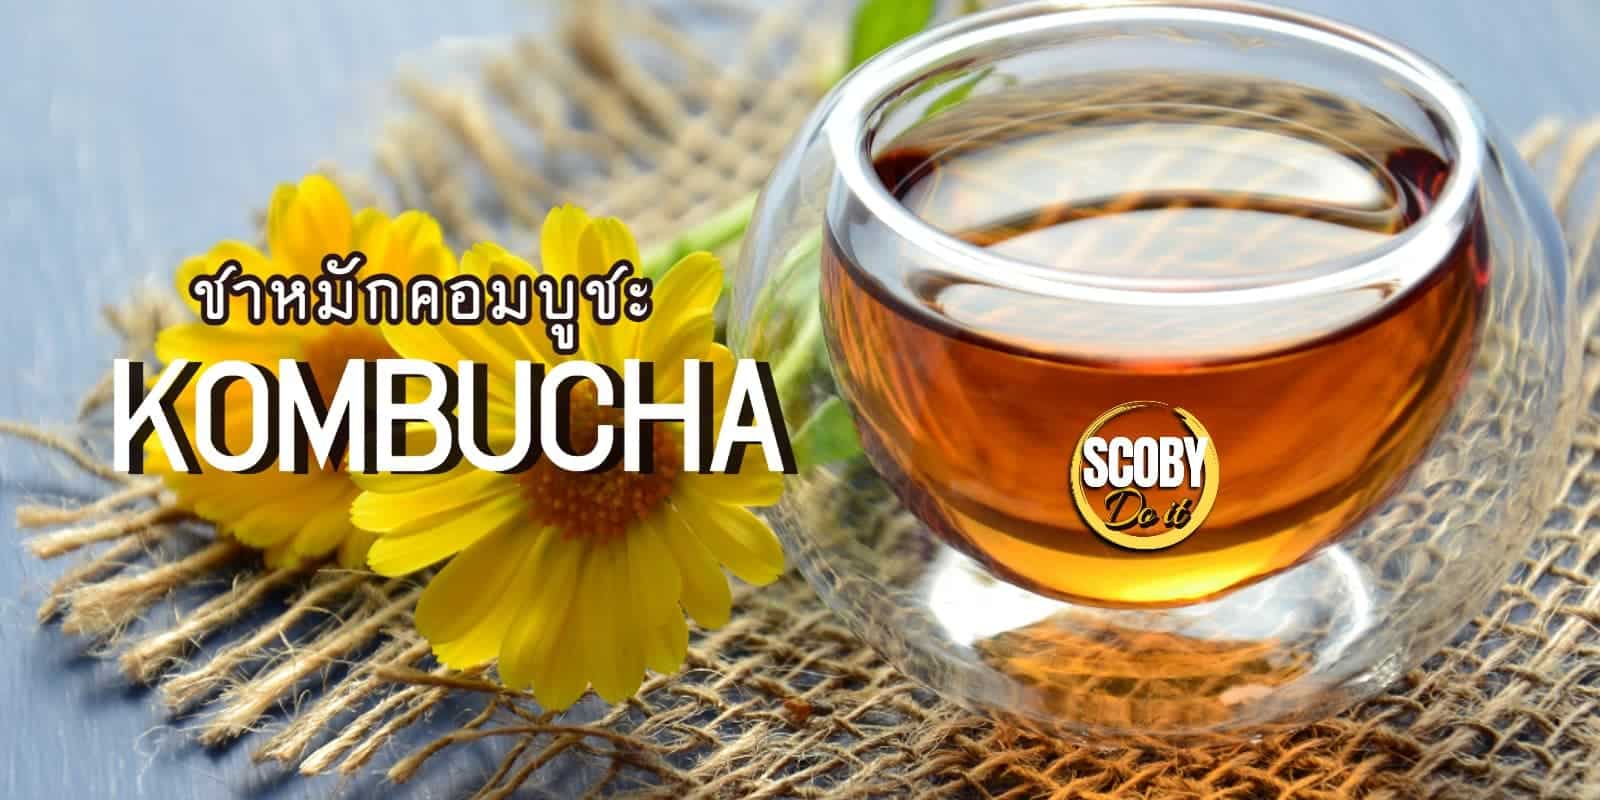 ชาหมัก คอมบูชะ kombucha